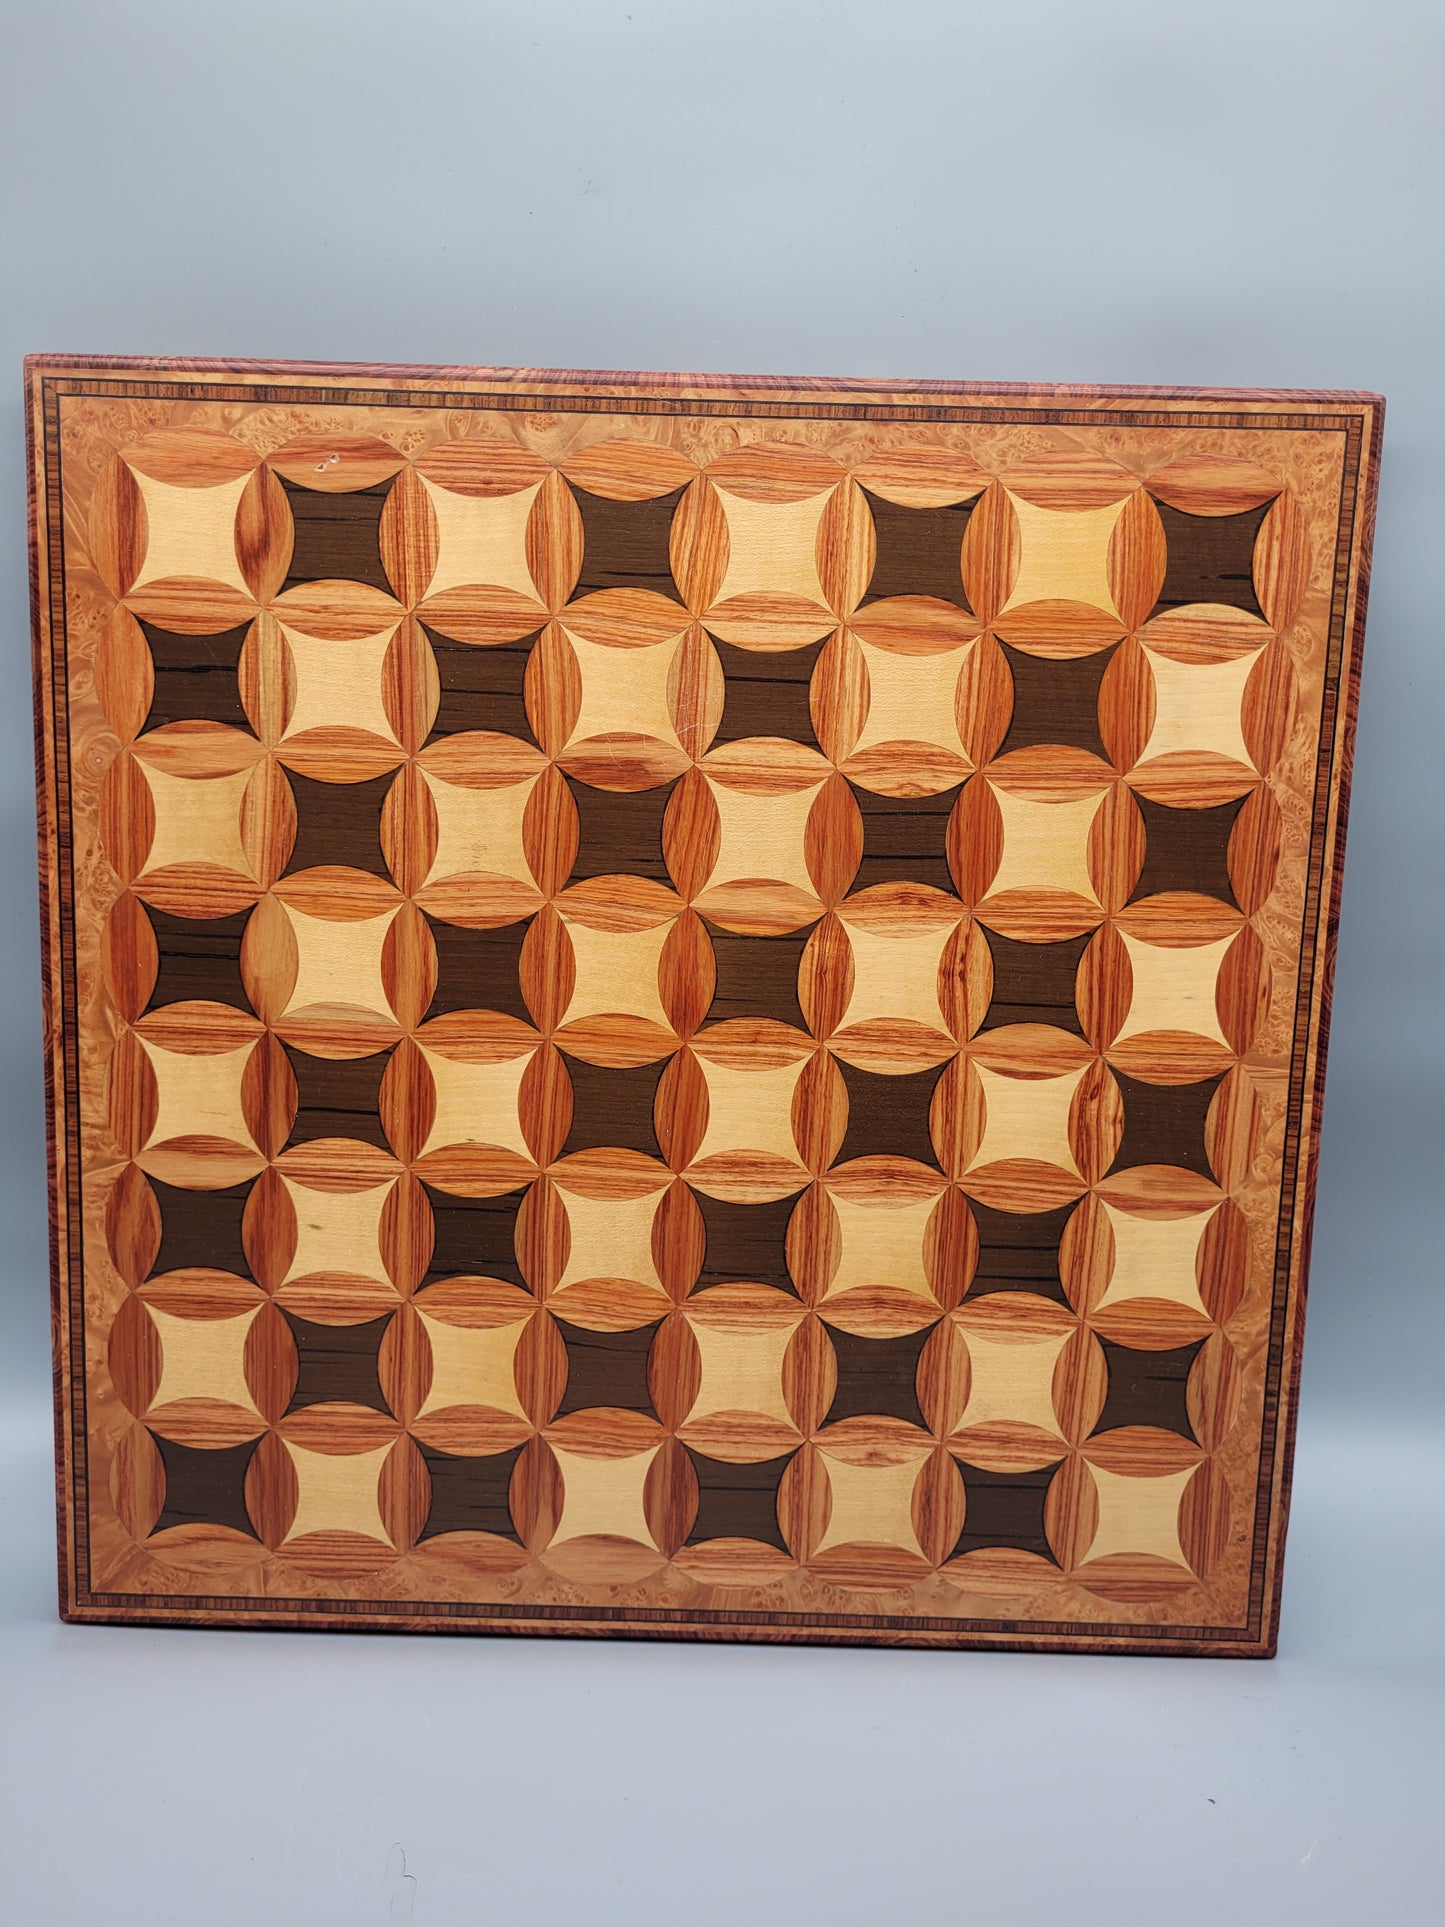 Antikes Handgefertigtes Schachbrett Schachspiel für Sammler